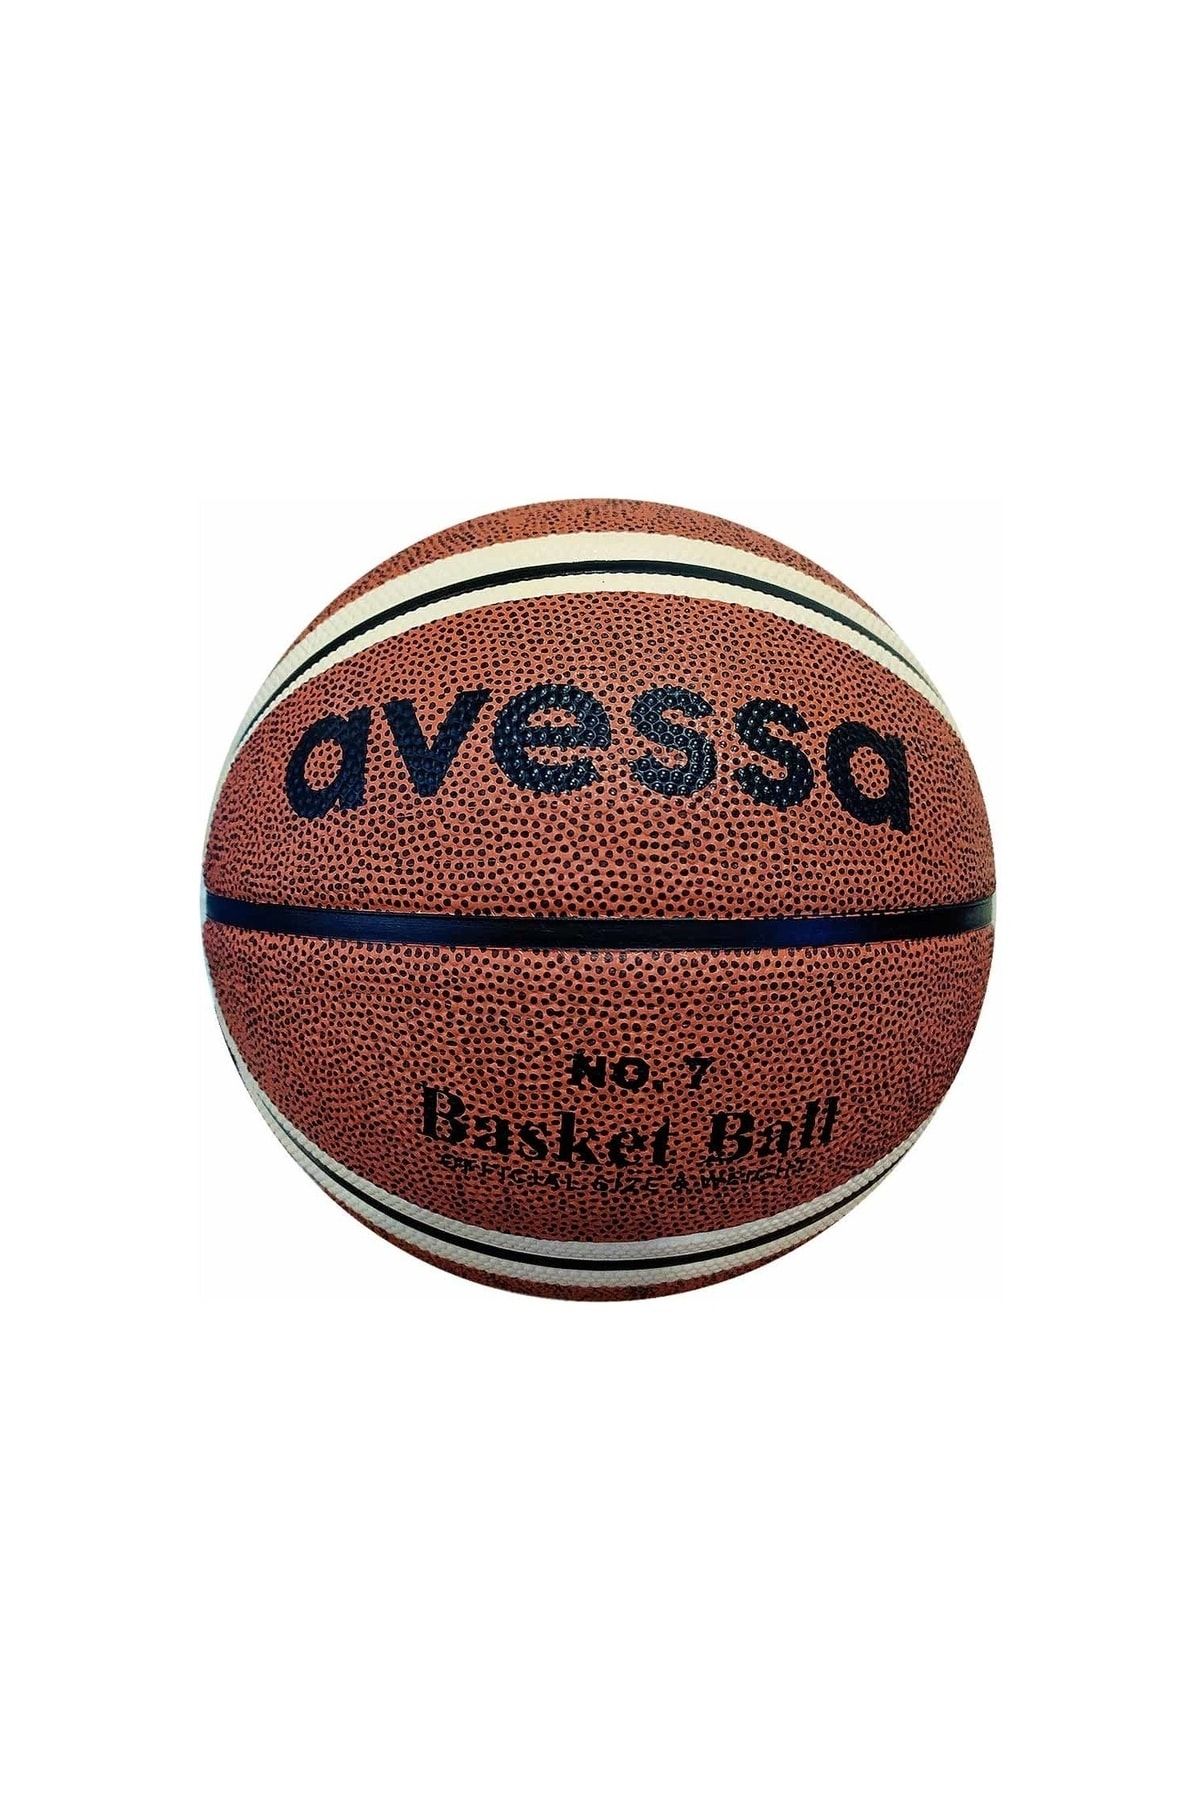 Avessa Basket Topu Bt-170